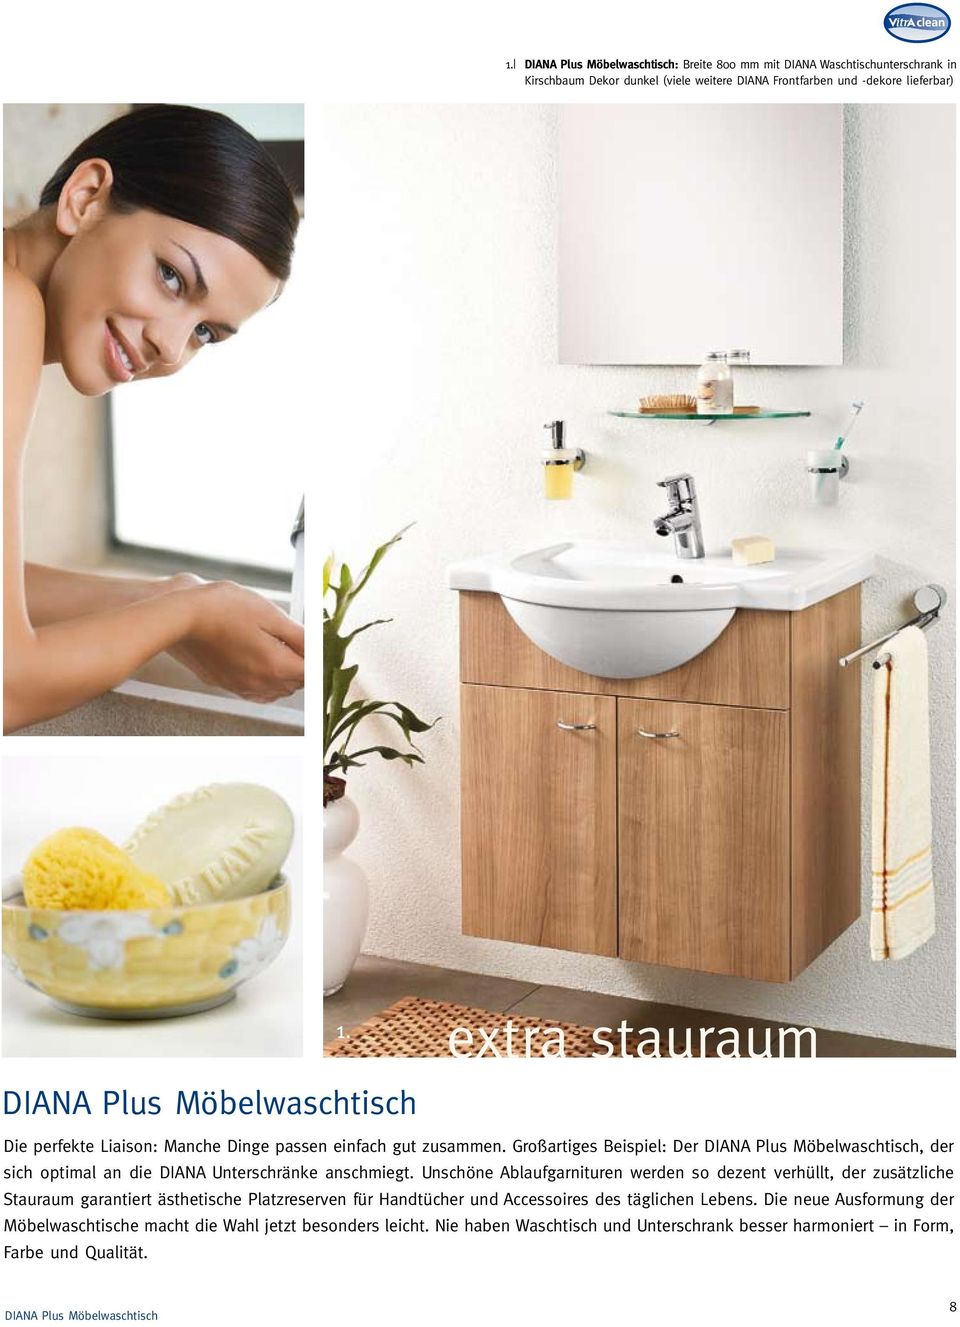 Großartiges Beispiel: Der DIANA Plus Möbelwaschtisch, der sich optimal an die DIANA Unterschränke anschmiegt.